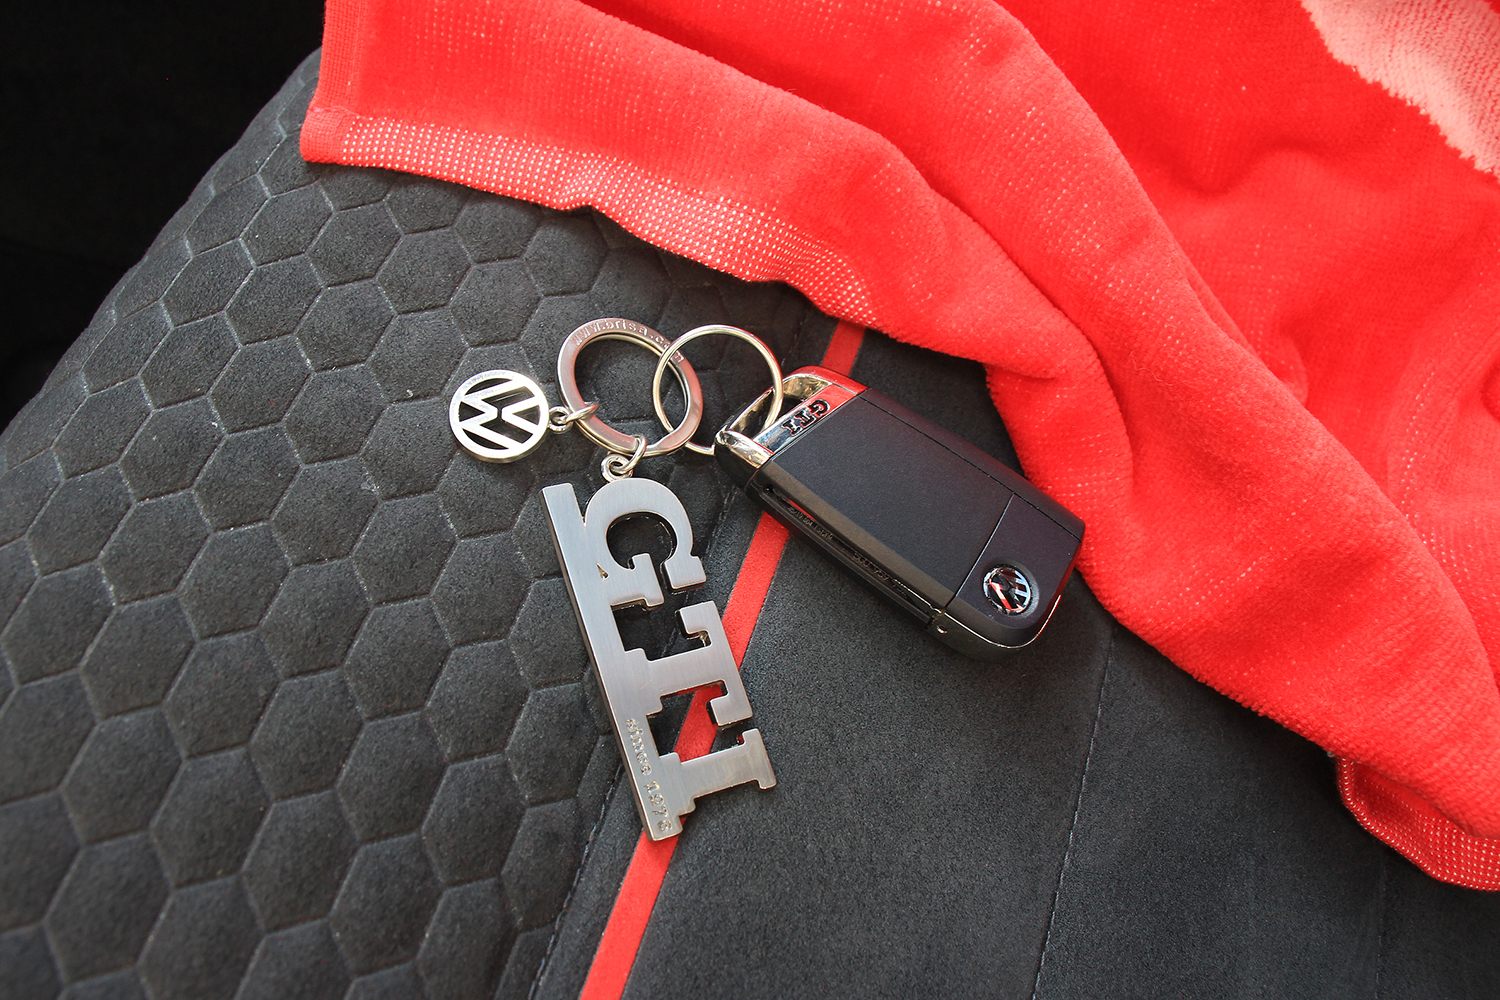 GTI Schlüsselanhänger mit Charm in Sichtverpackung - since 1976